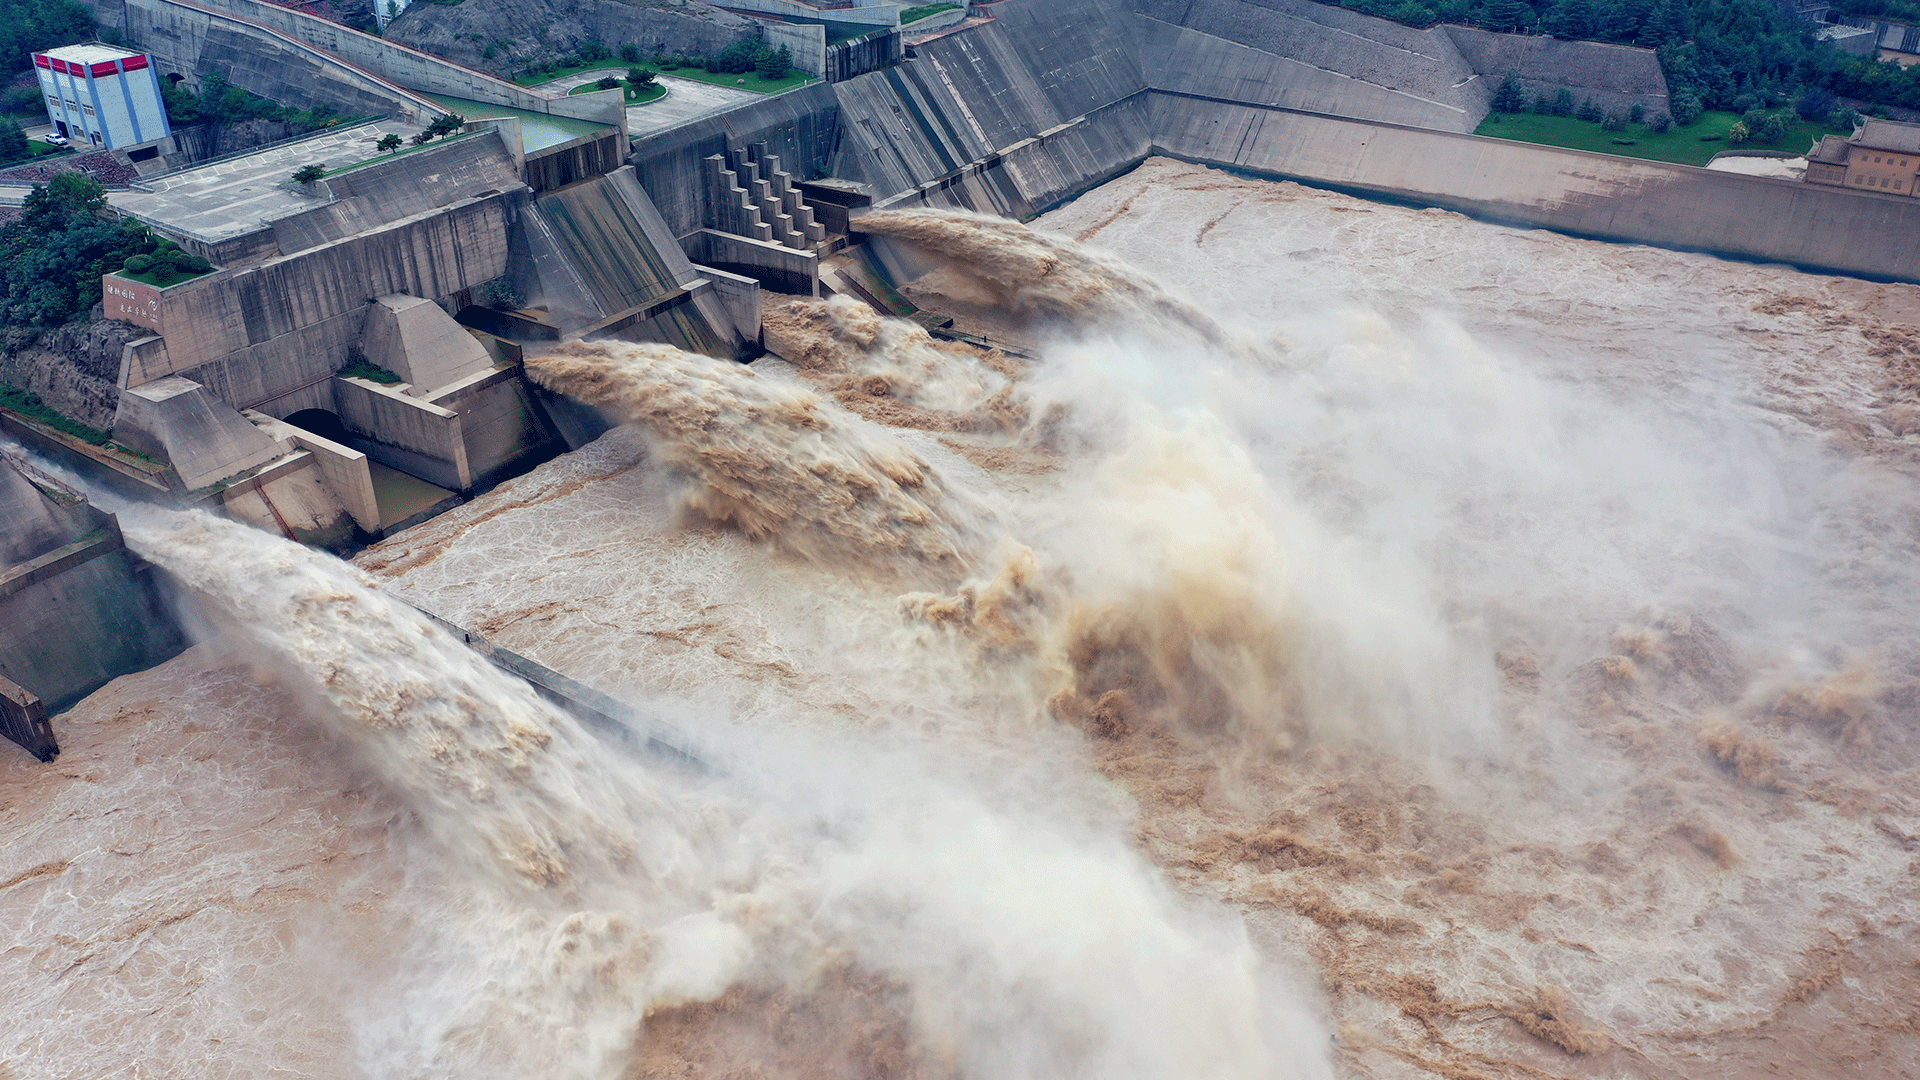 Alerta en China por el inminente colapso de una mega represa: “Puede romperse en cualquier momento”